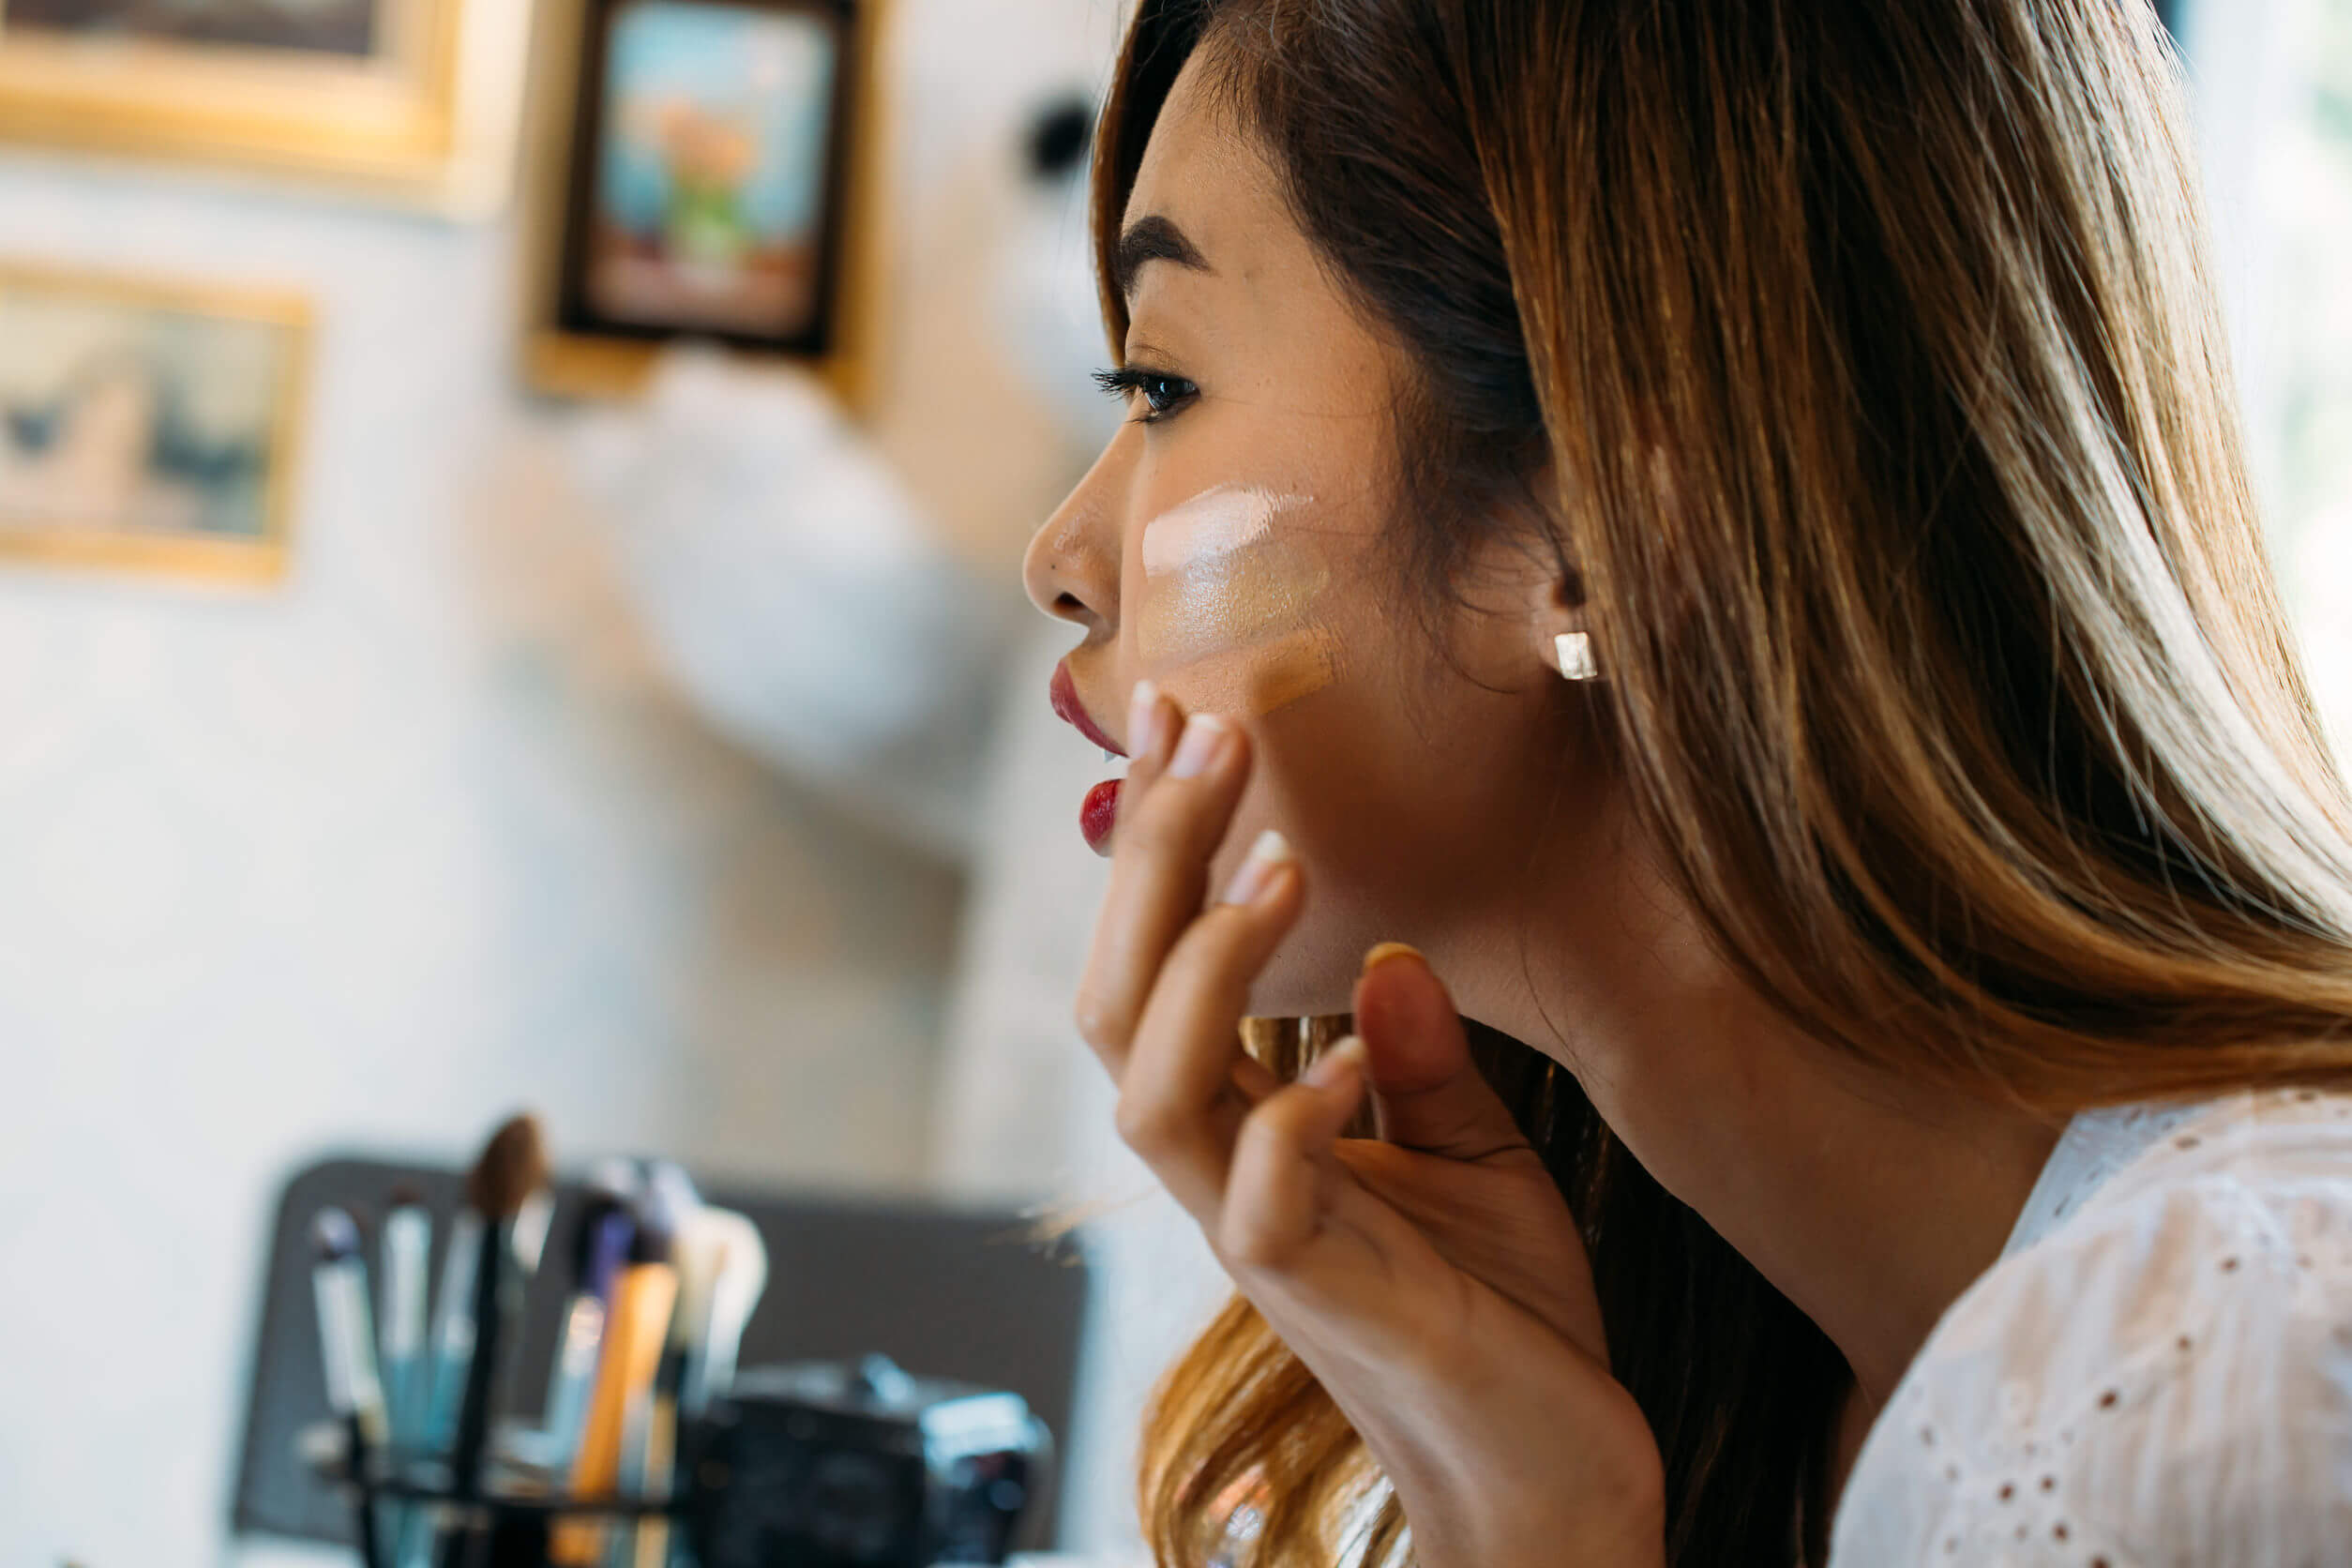 Cómo elegir la base de maquillaje según el tono de piel - LluchKare